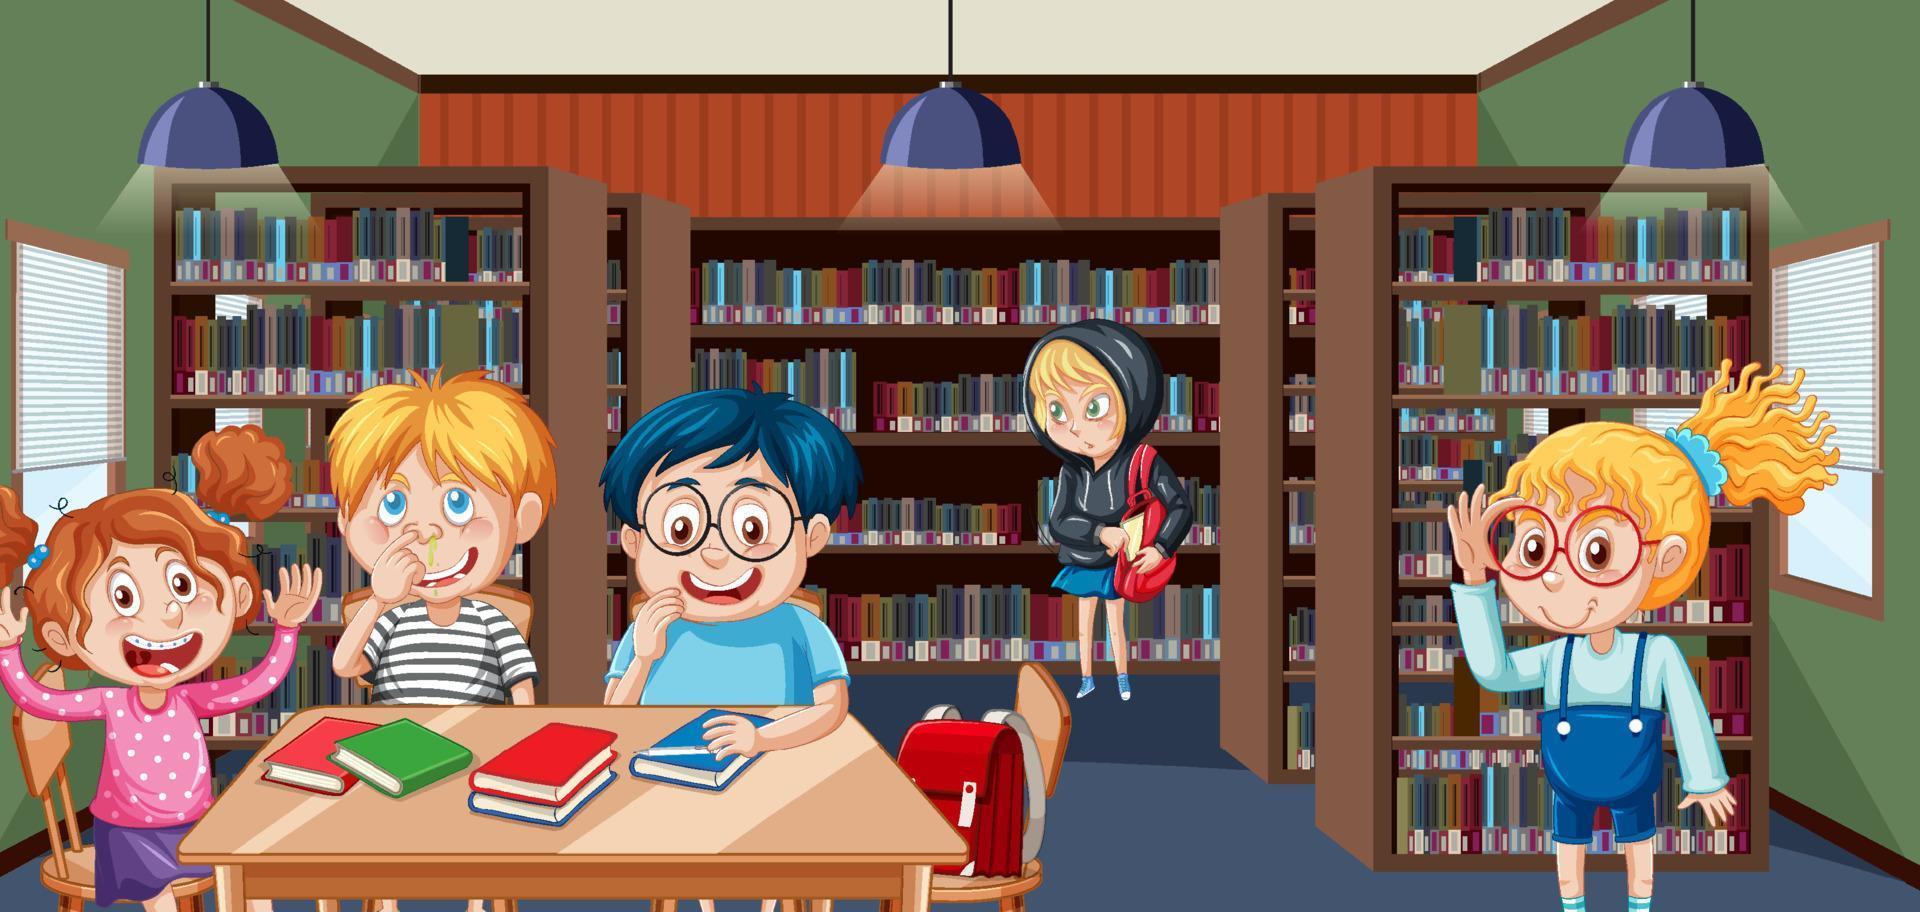 Children in school library scene vector